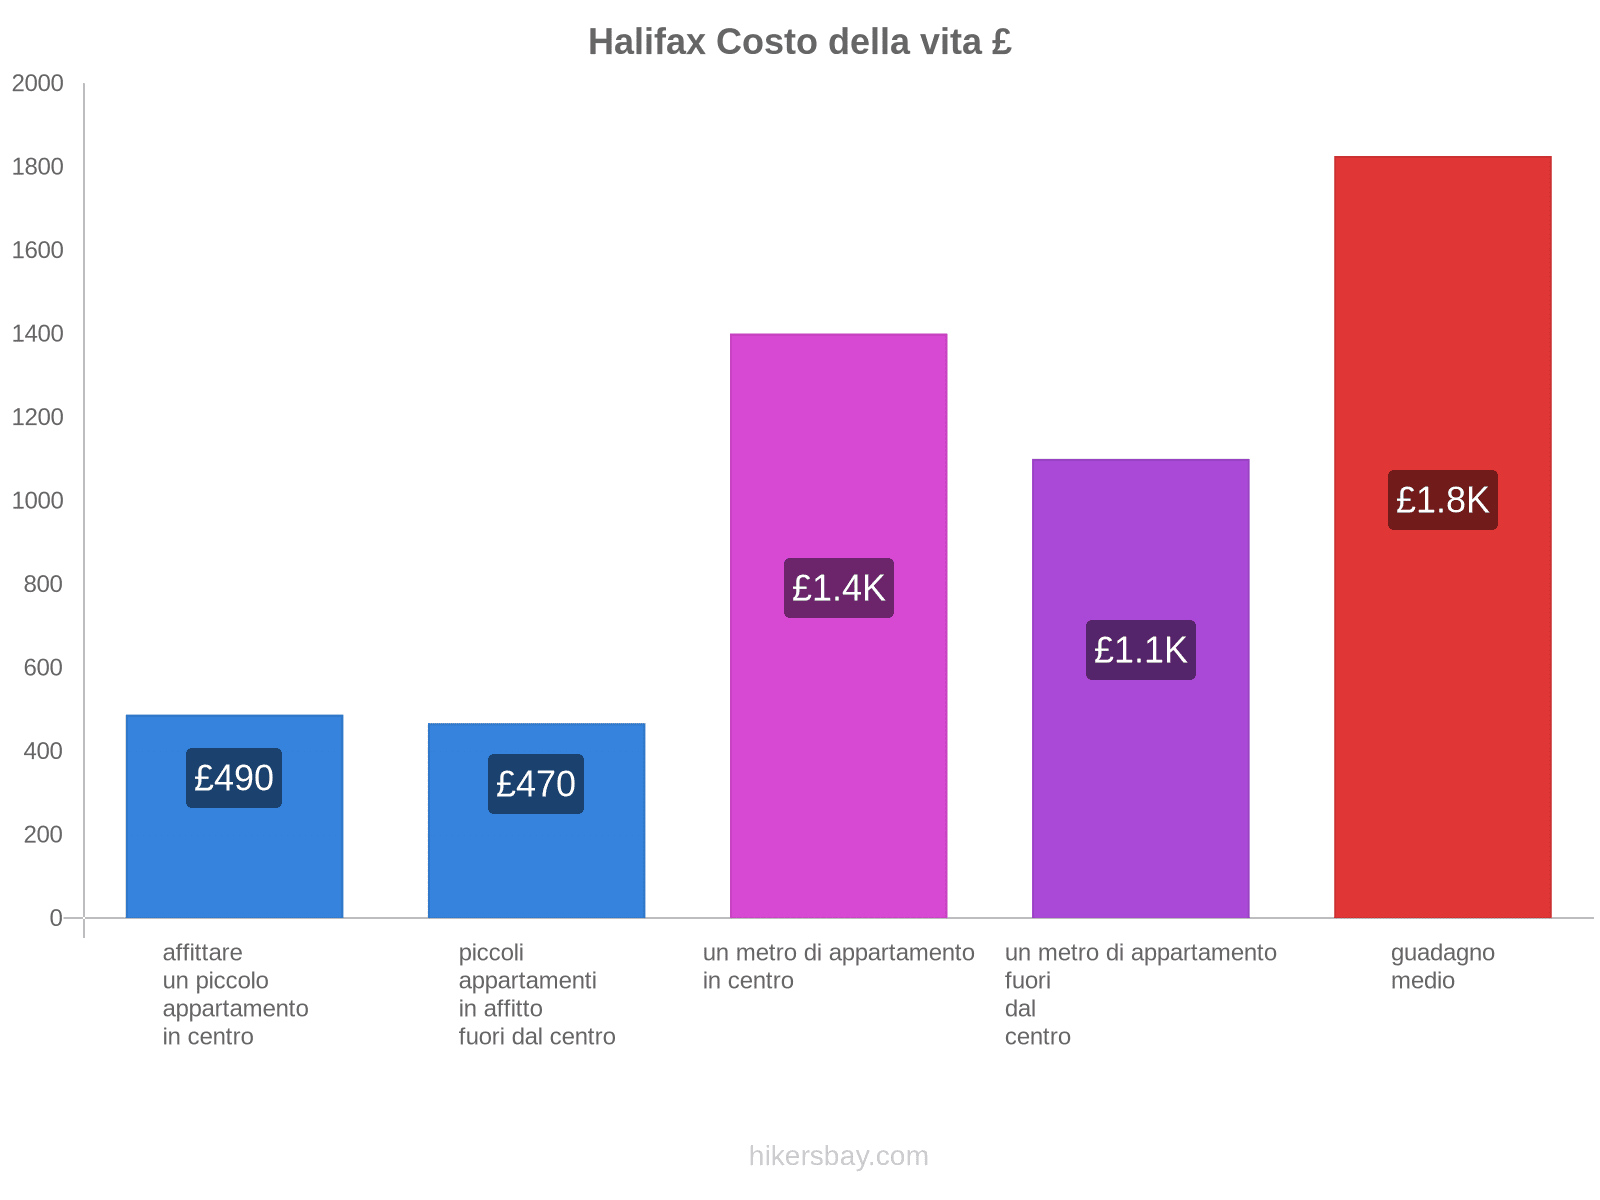 Halifax costo della vita hikersbay.com